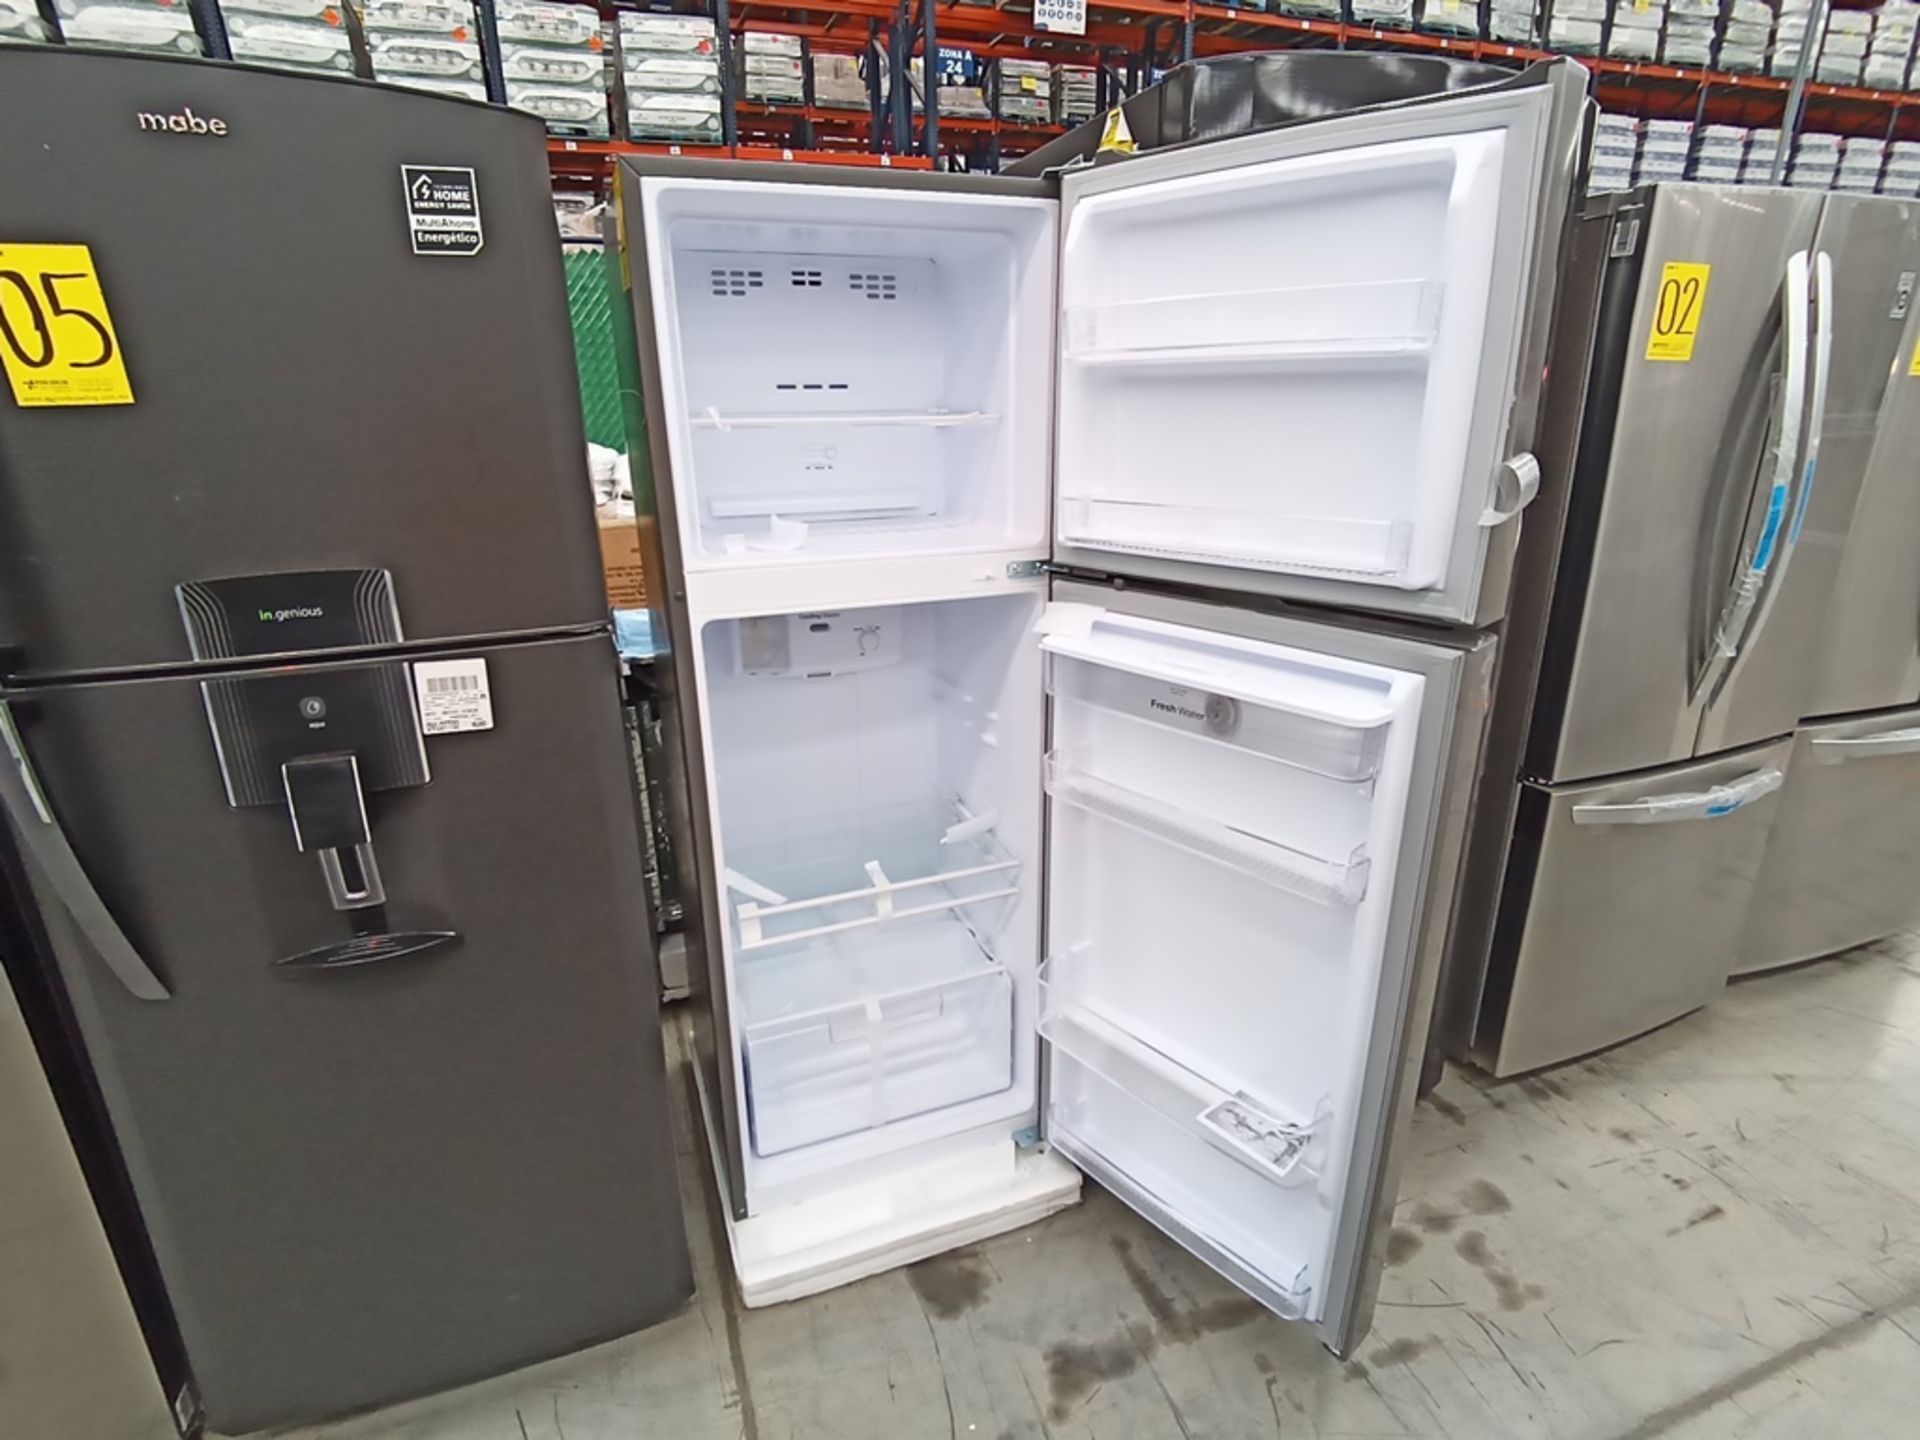 1 Refrigerador con dispensador de agua, Marca Winia, Modelo DFR-32210GMX, Serie MR217N10140659, Col - Image 7 of 10